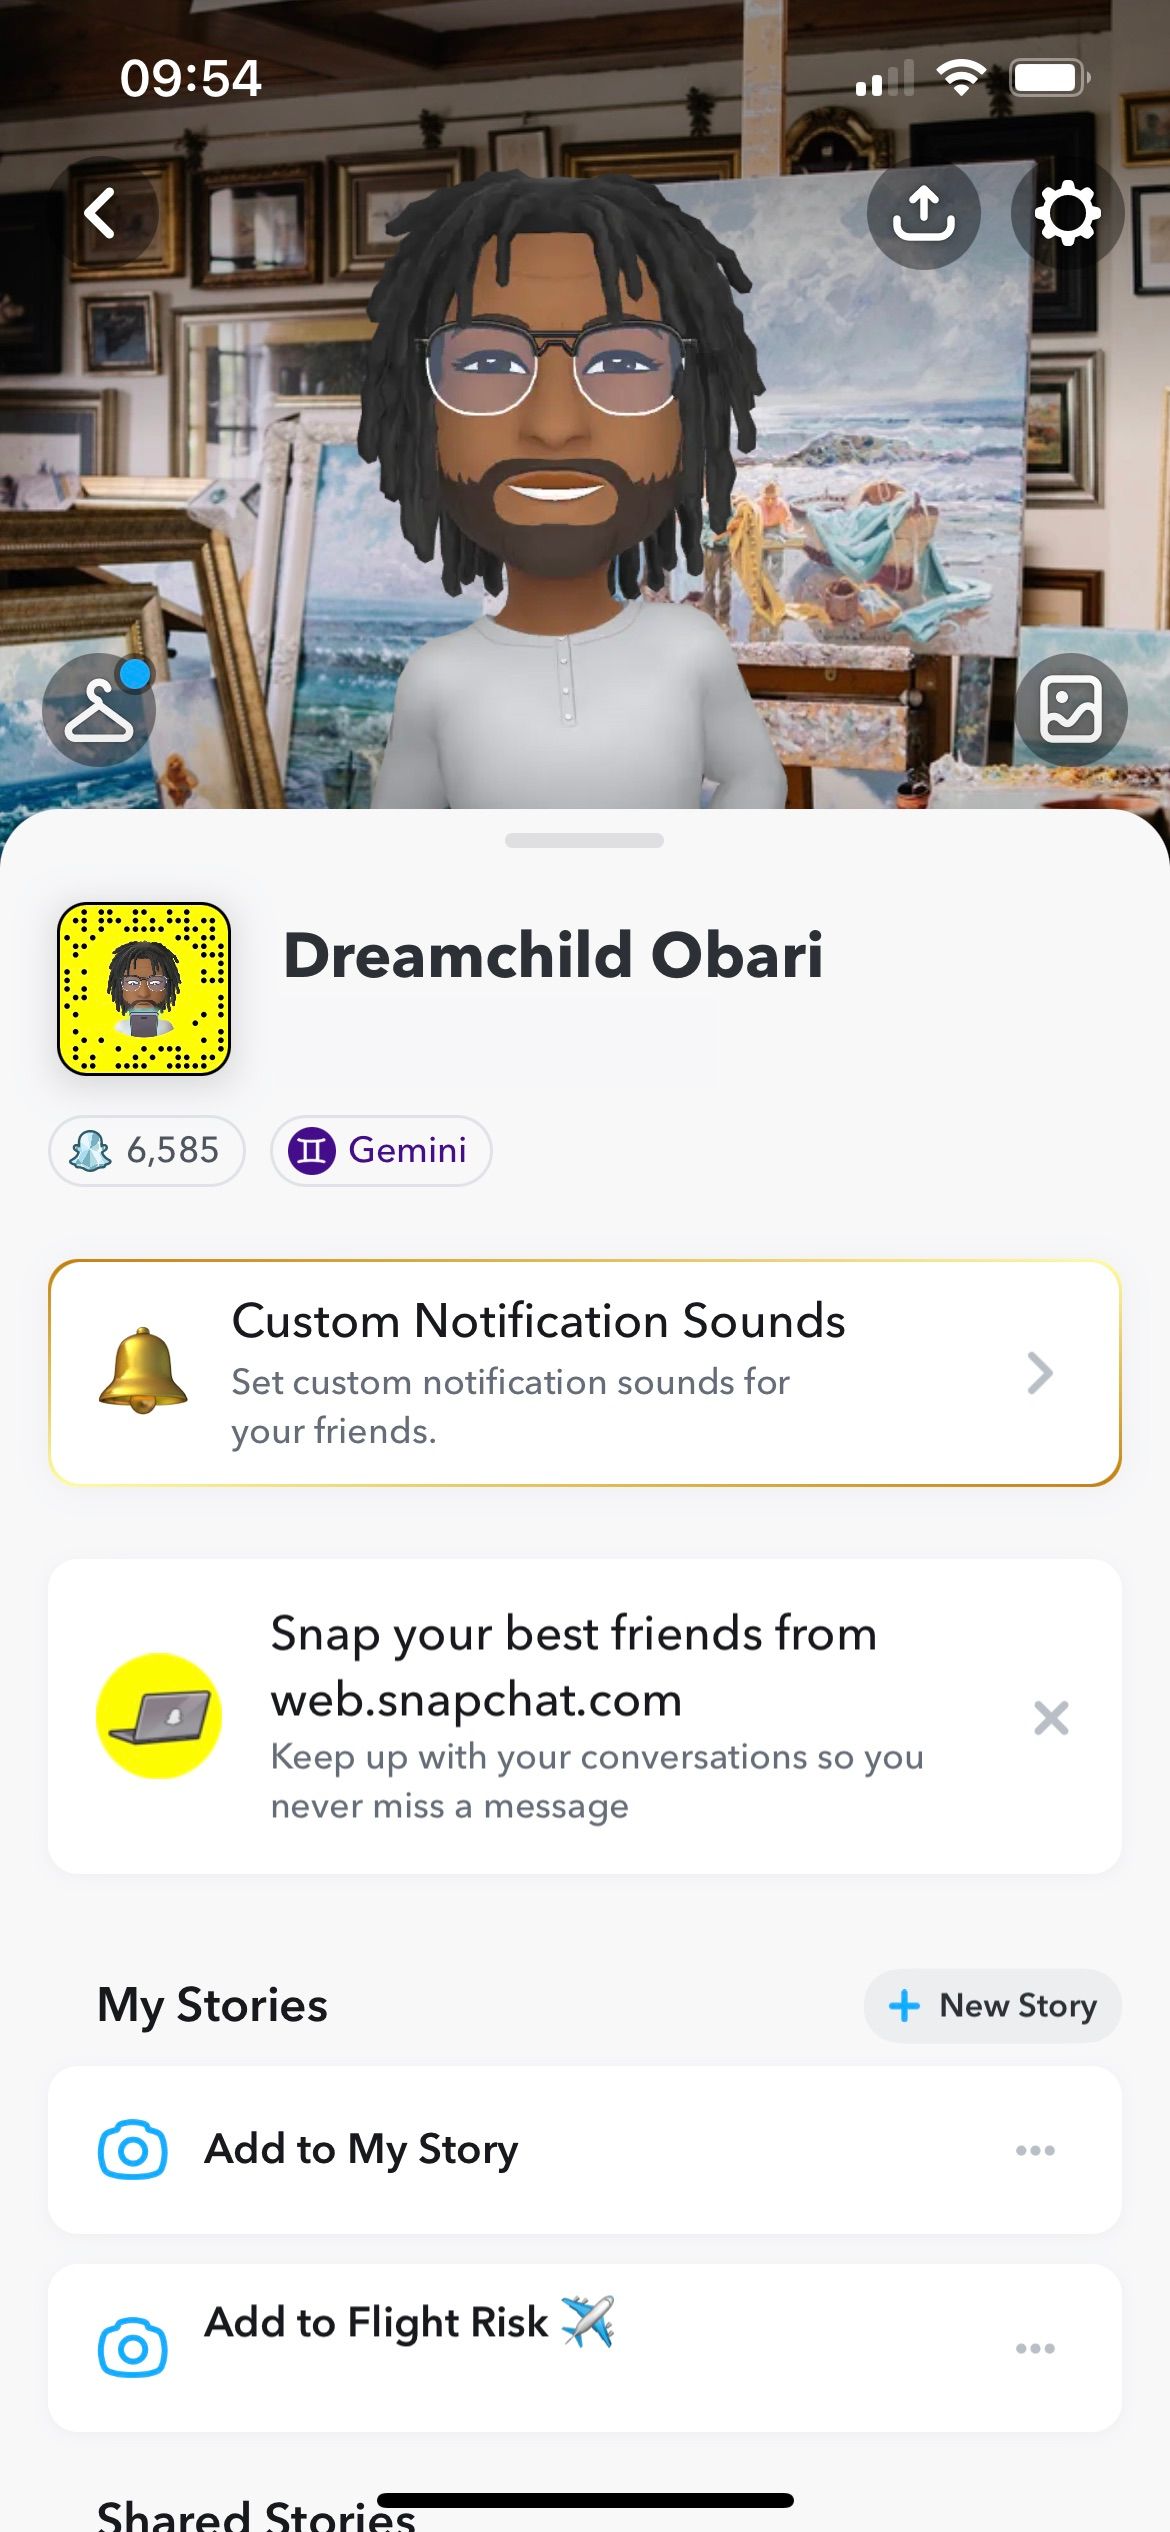 Dreamchild Obari's Snapchat profile page